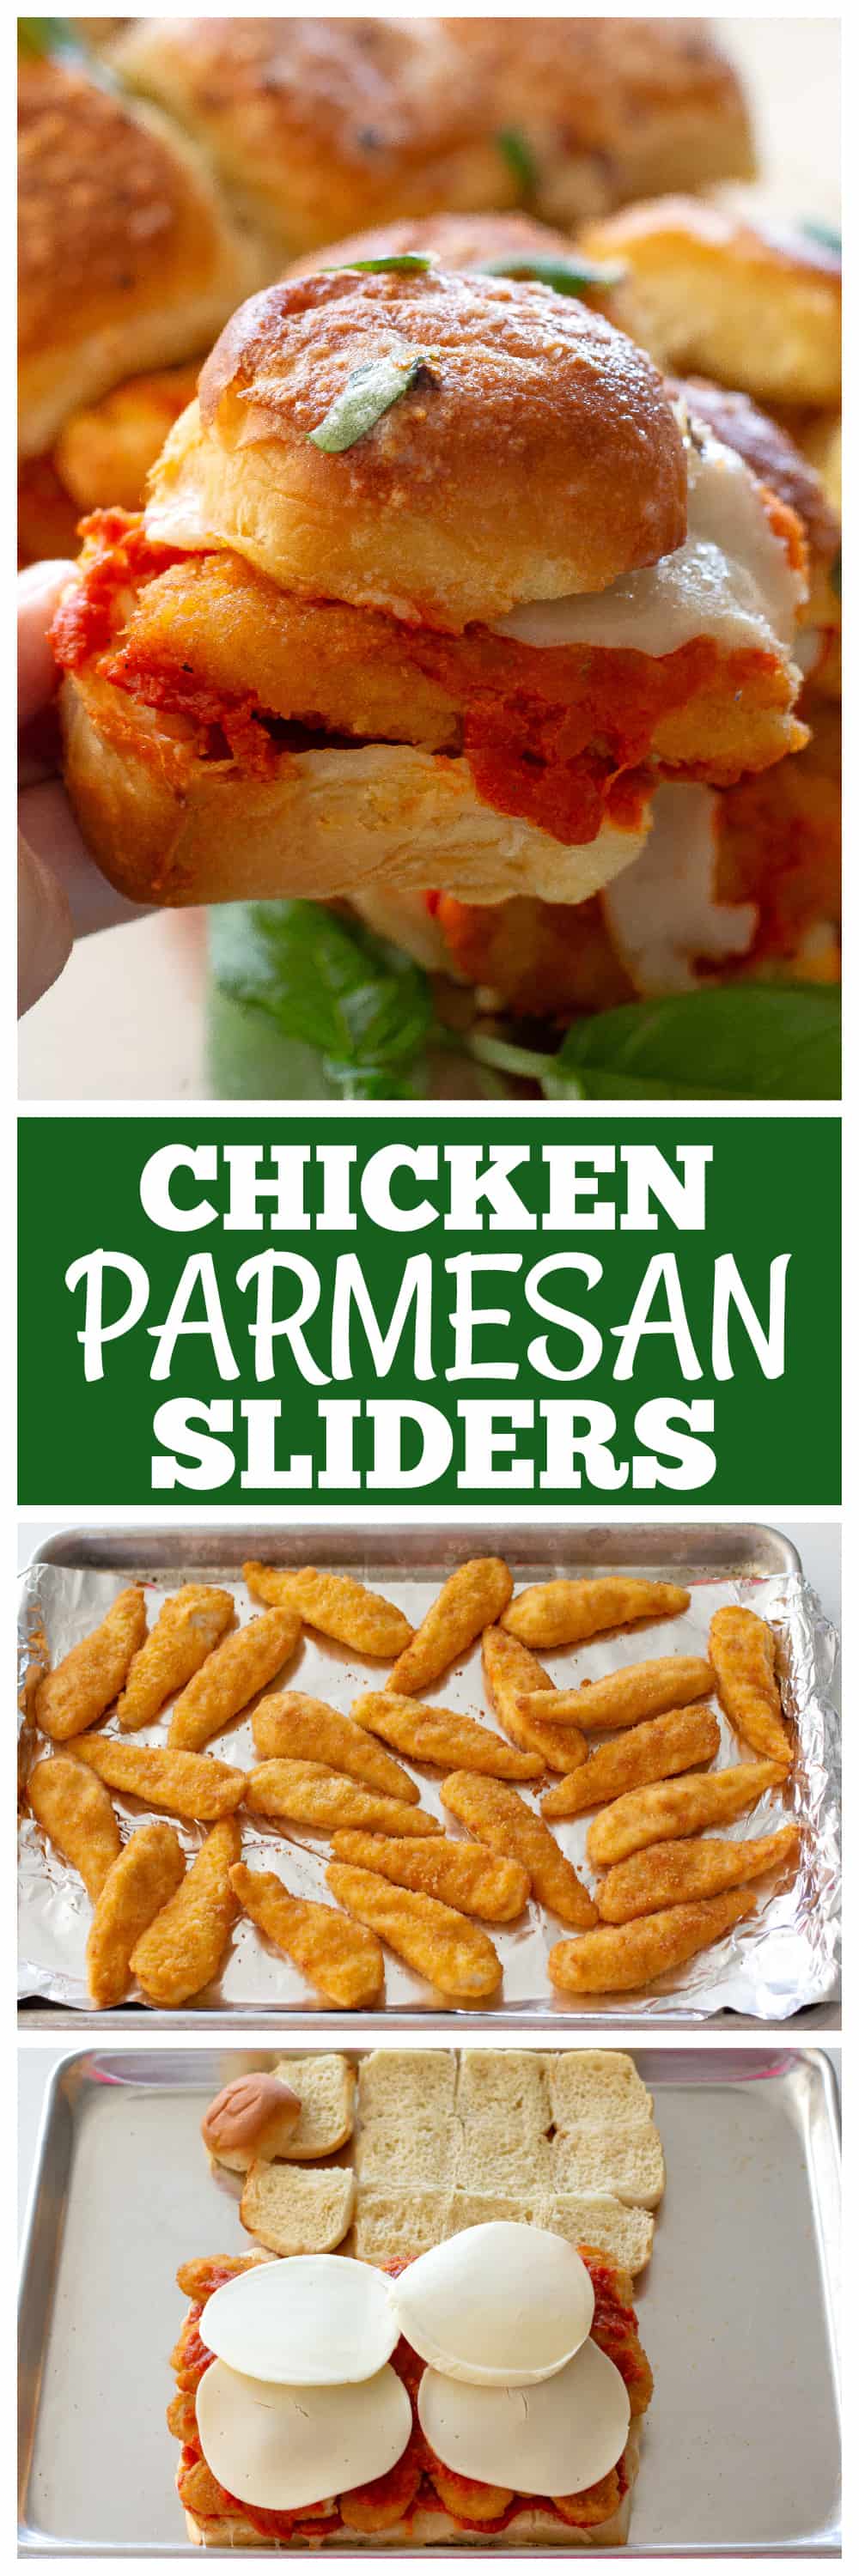 Chicken Parmesan Sliders